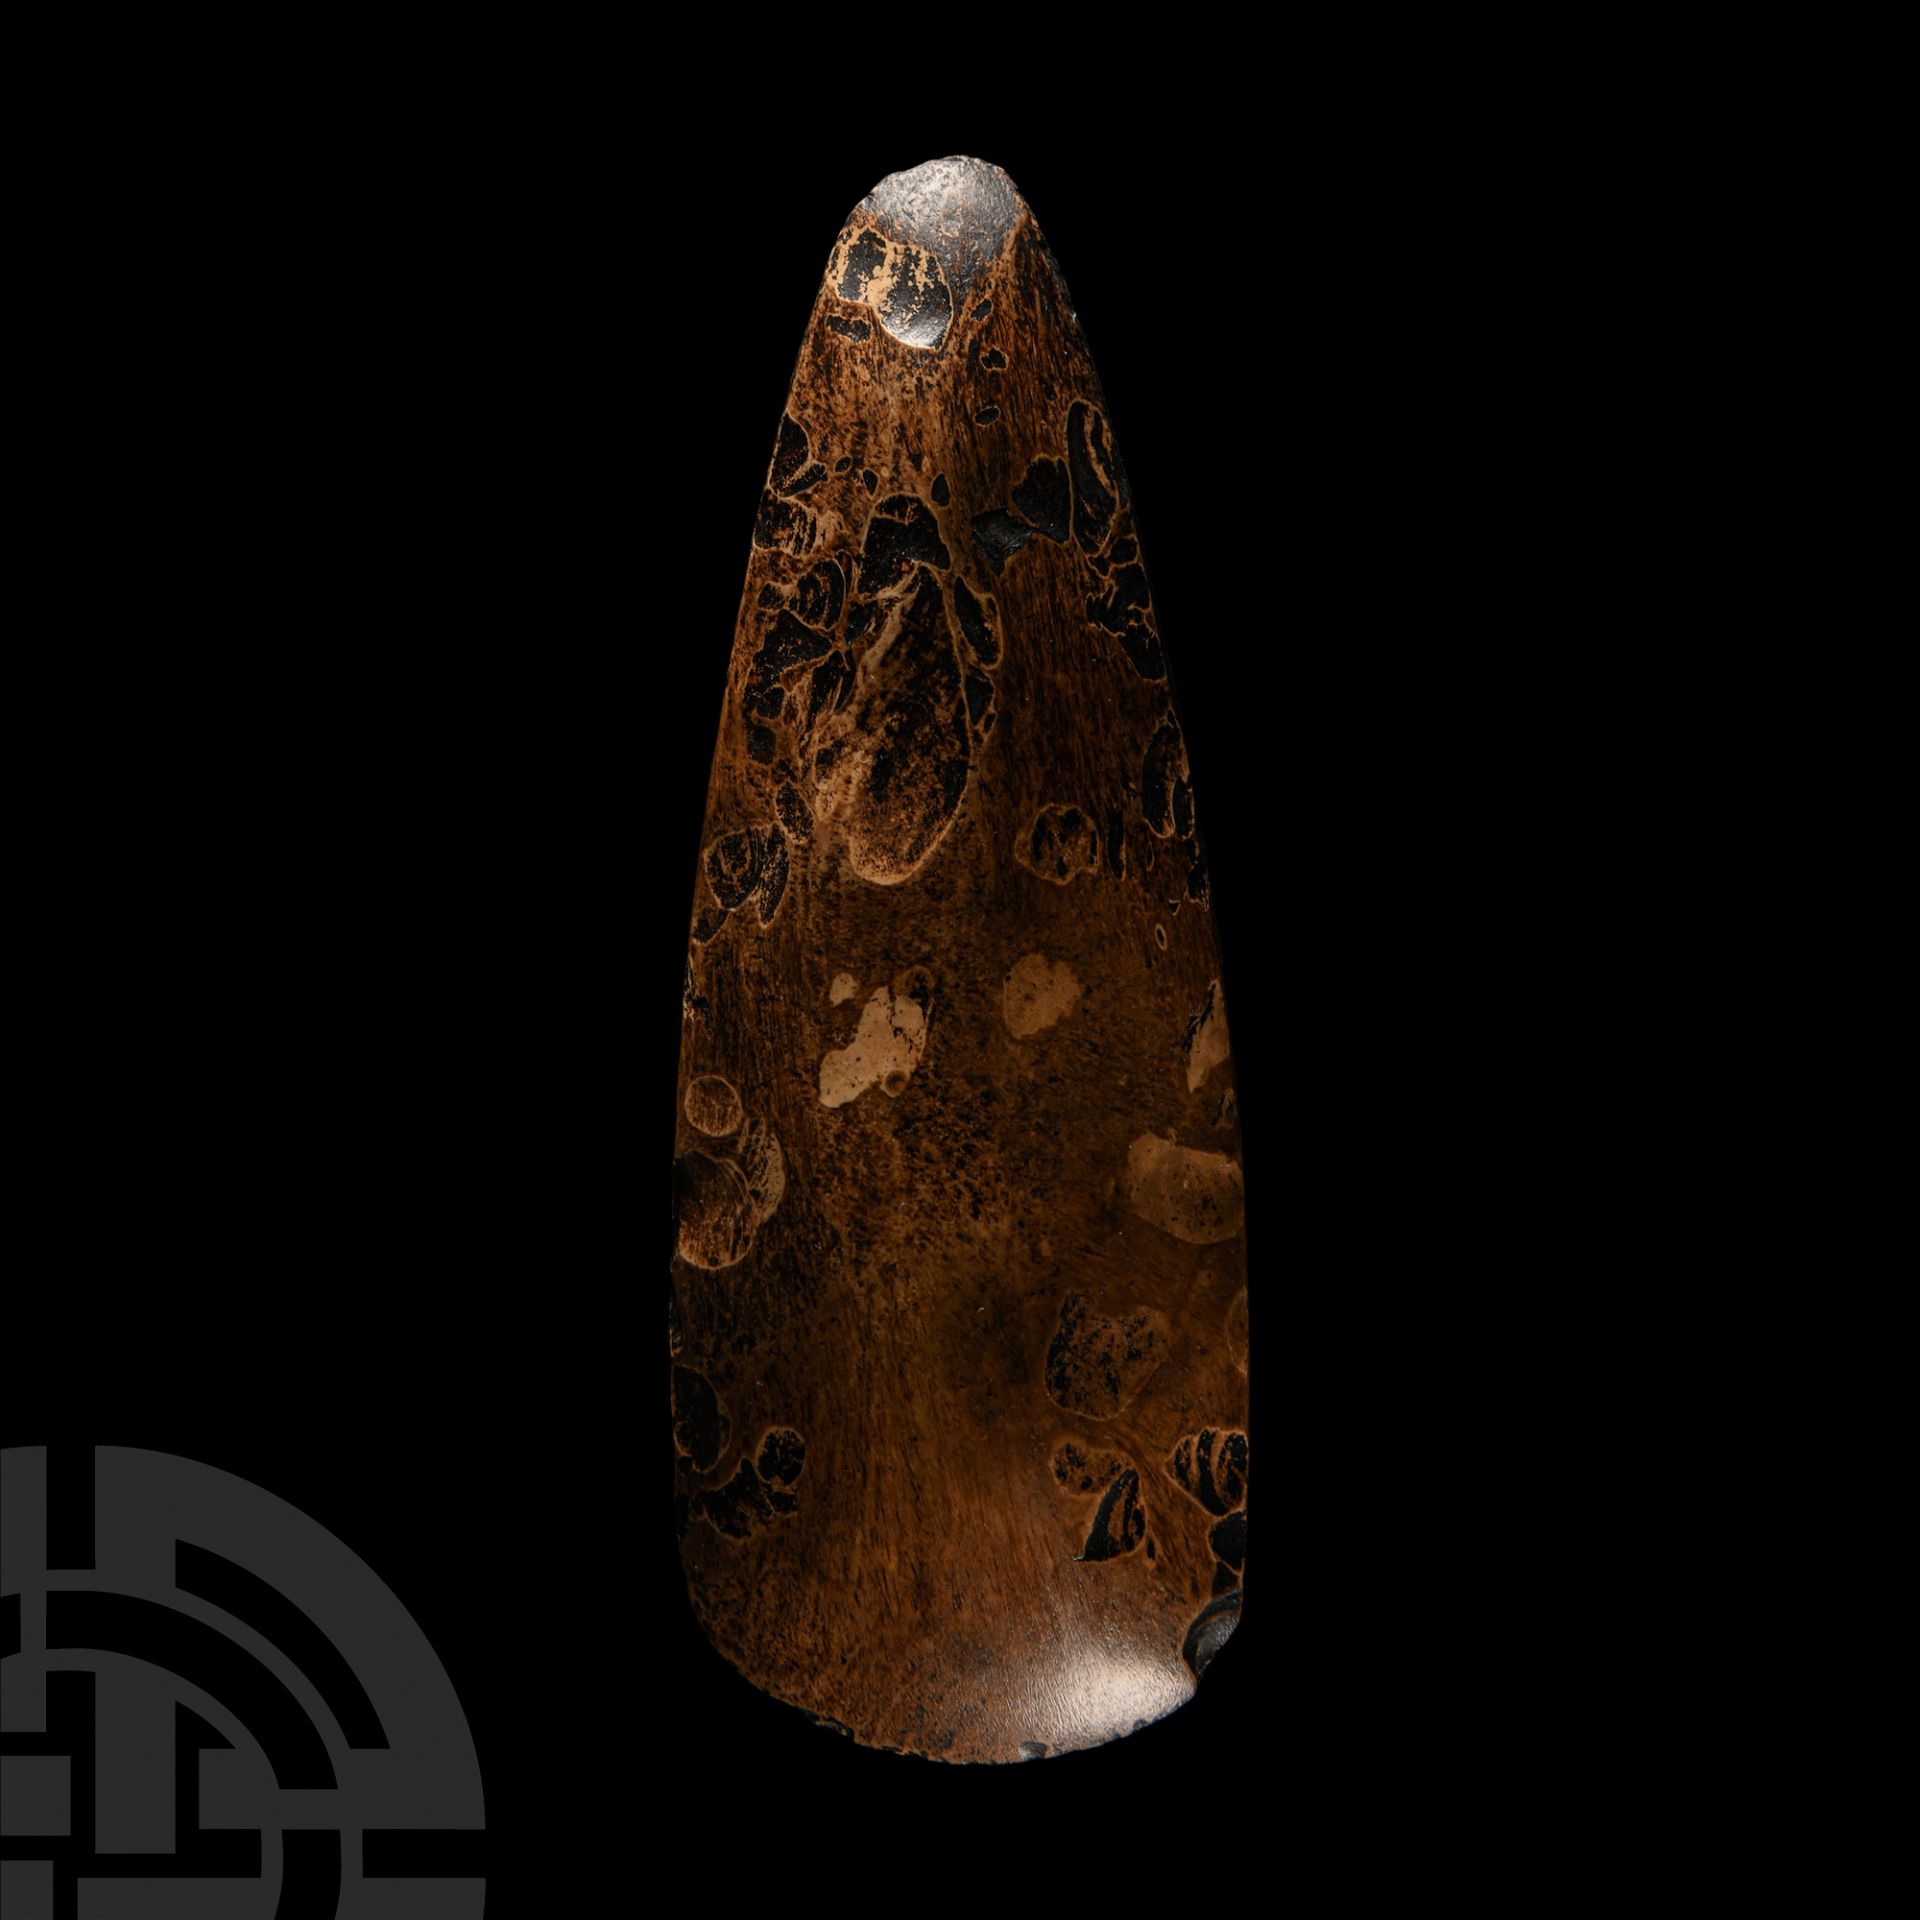 Stone Age Polished Stone Handaxe - Image 3 of 3